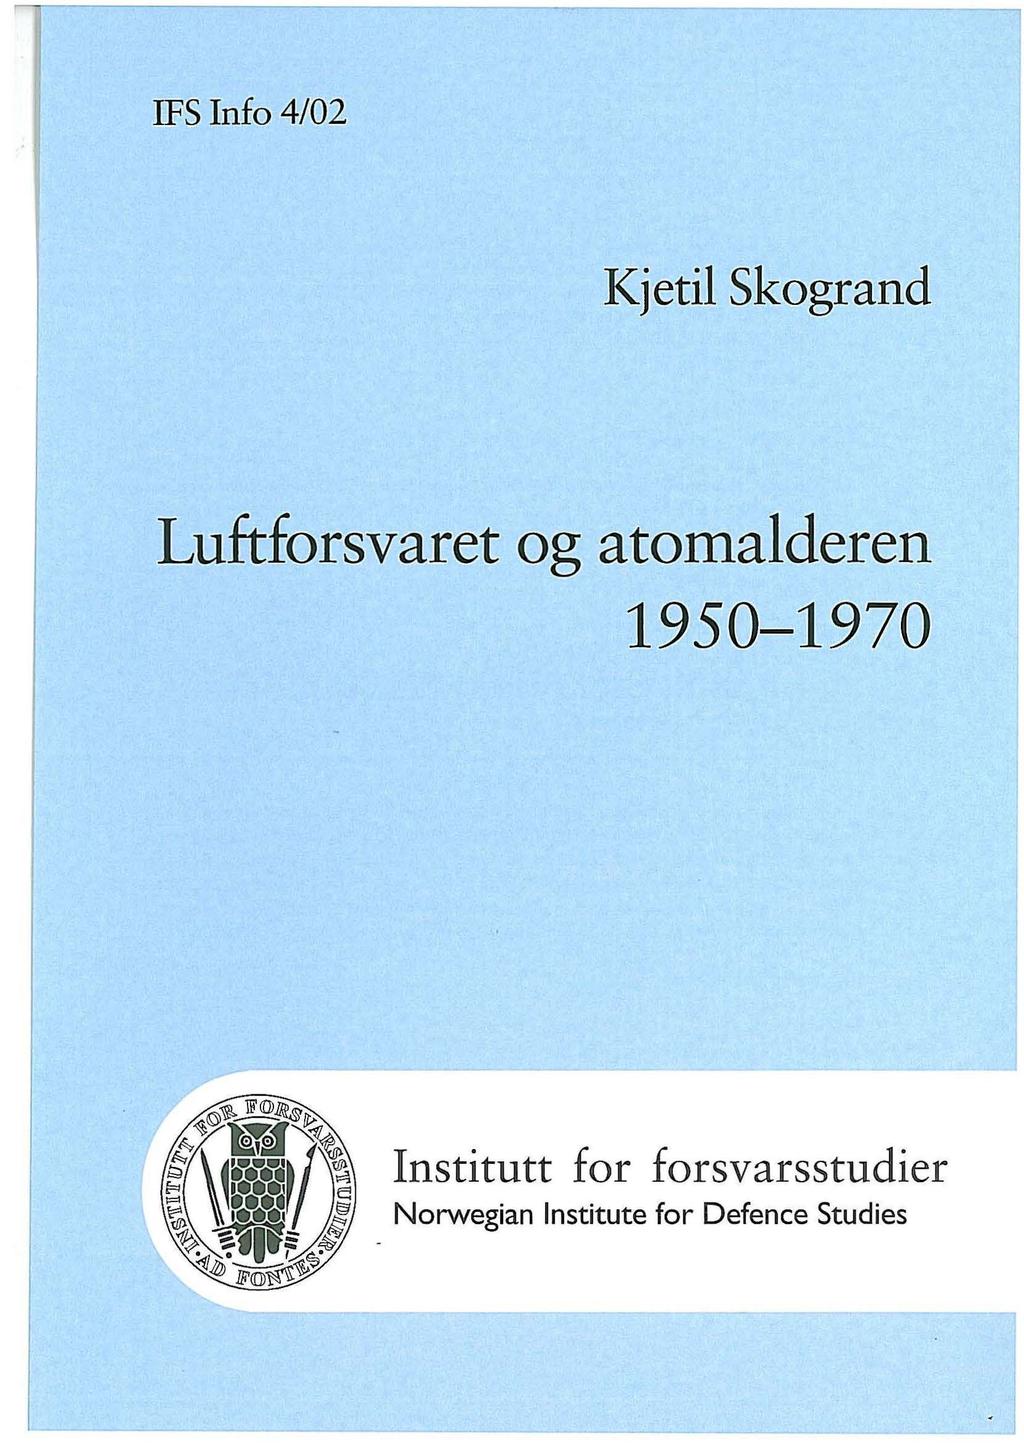 IFS Info 4/02 Kjetil Skogrand Luftforsvaret og atomalderen 1950-1970